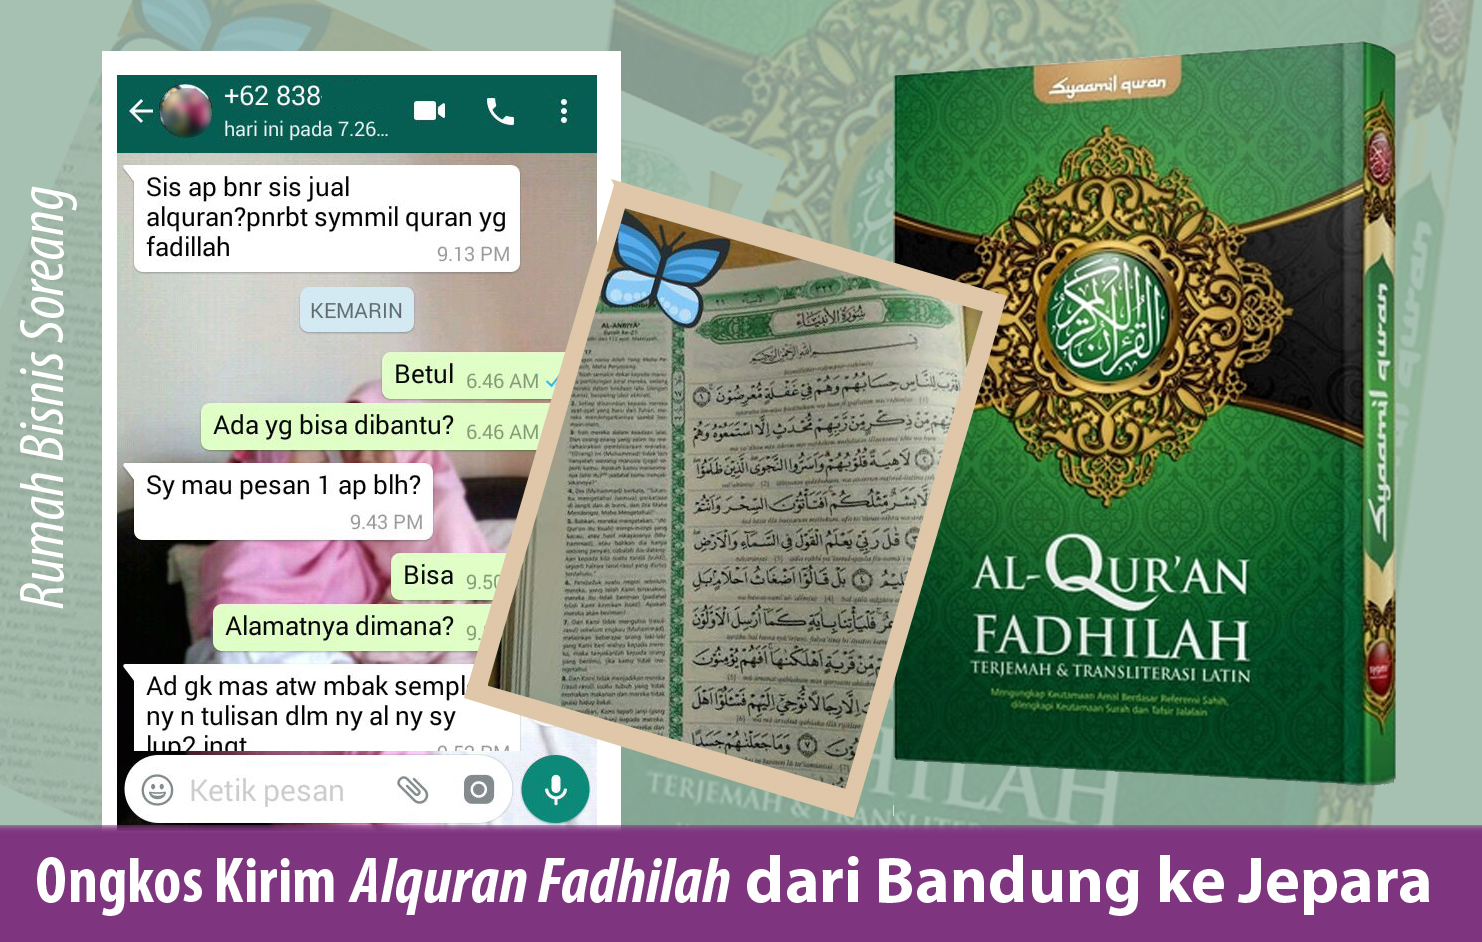 Ongkos Kirim Alquran Fadhilah dari Bandung ke Jepara 